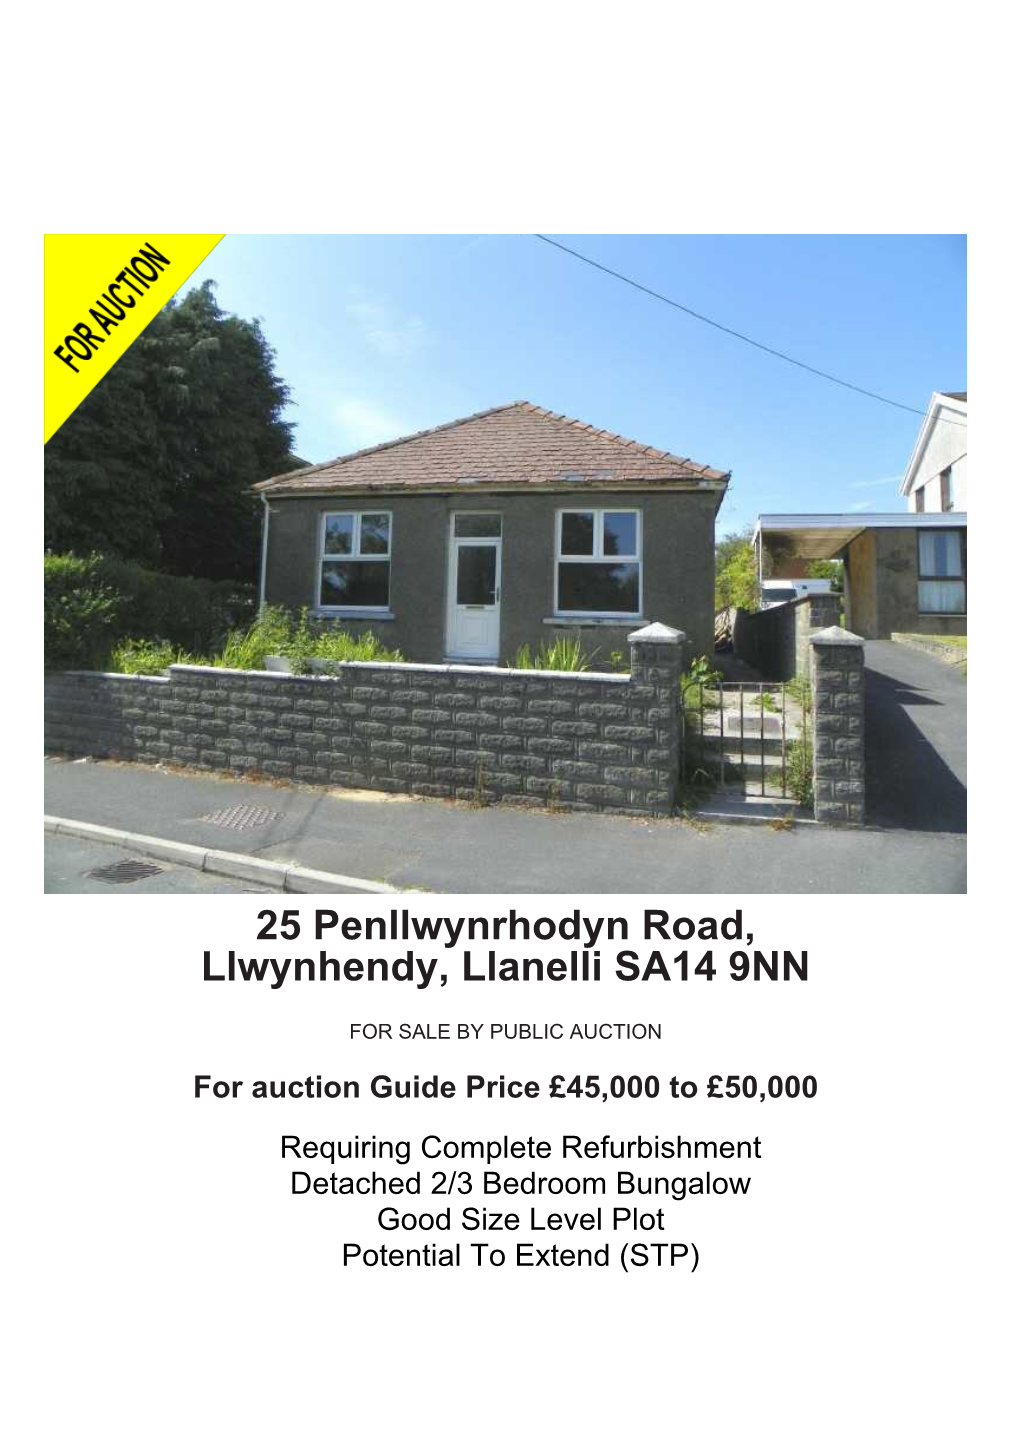 25 Penllwynrhodyn Road, Llwynhendy, Llanelli SA14 9NN